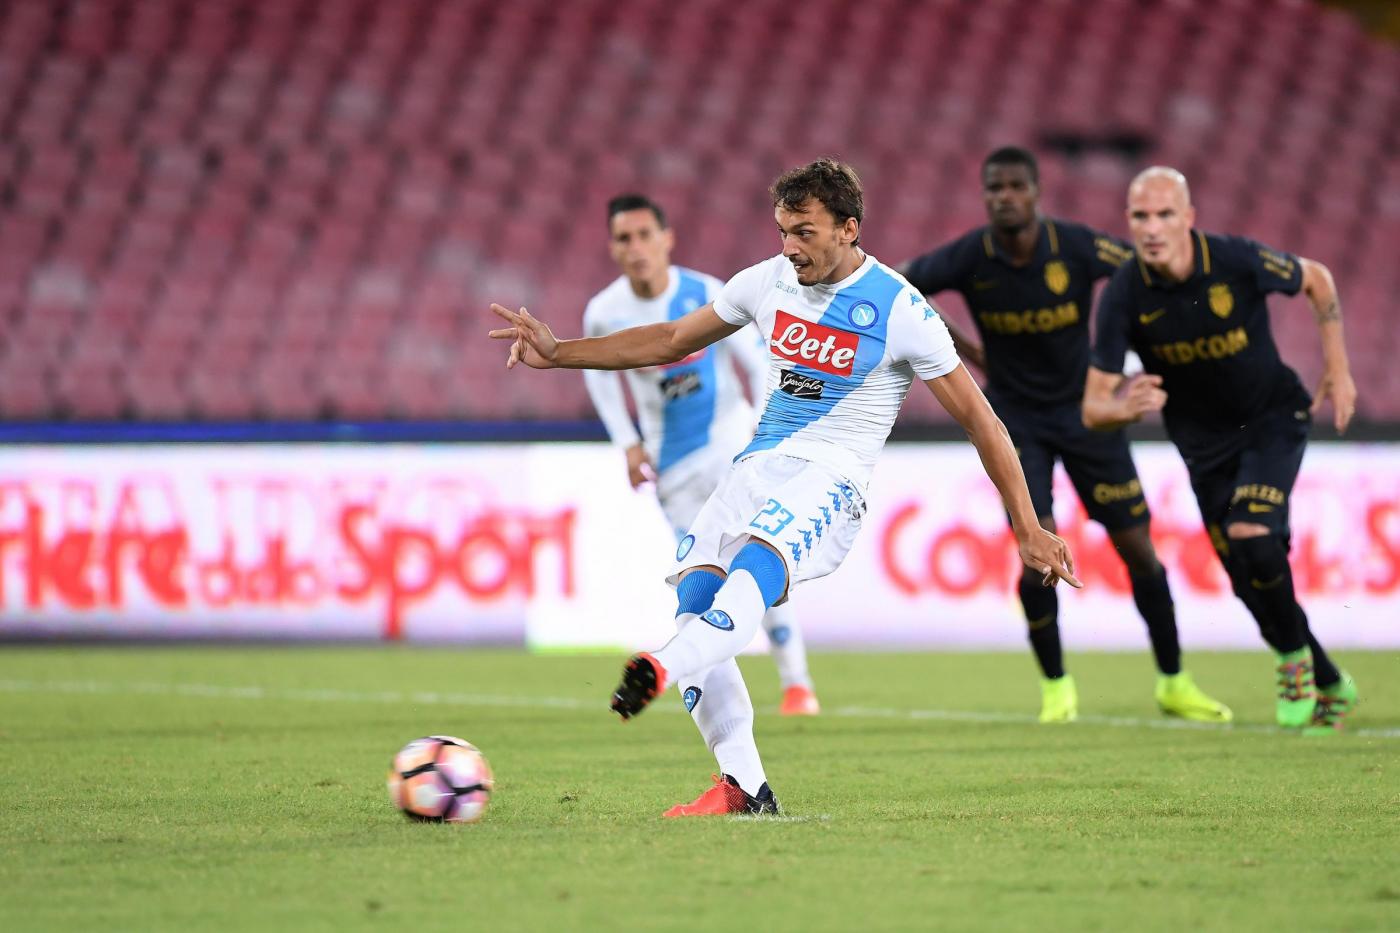 Quattro gol possono invertire la rotta tra Gabbiadini e il Napoli?